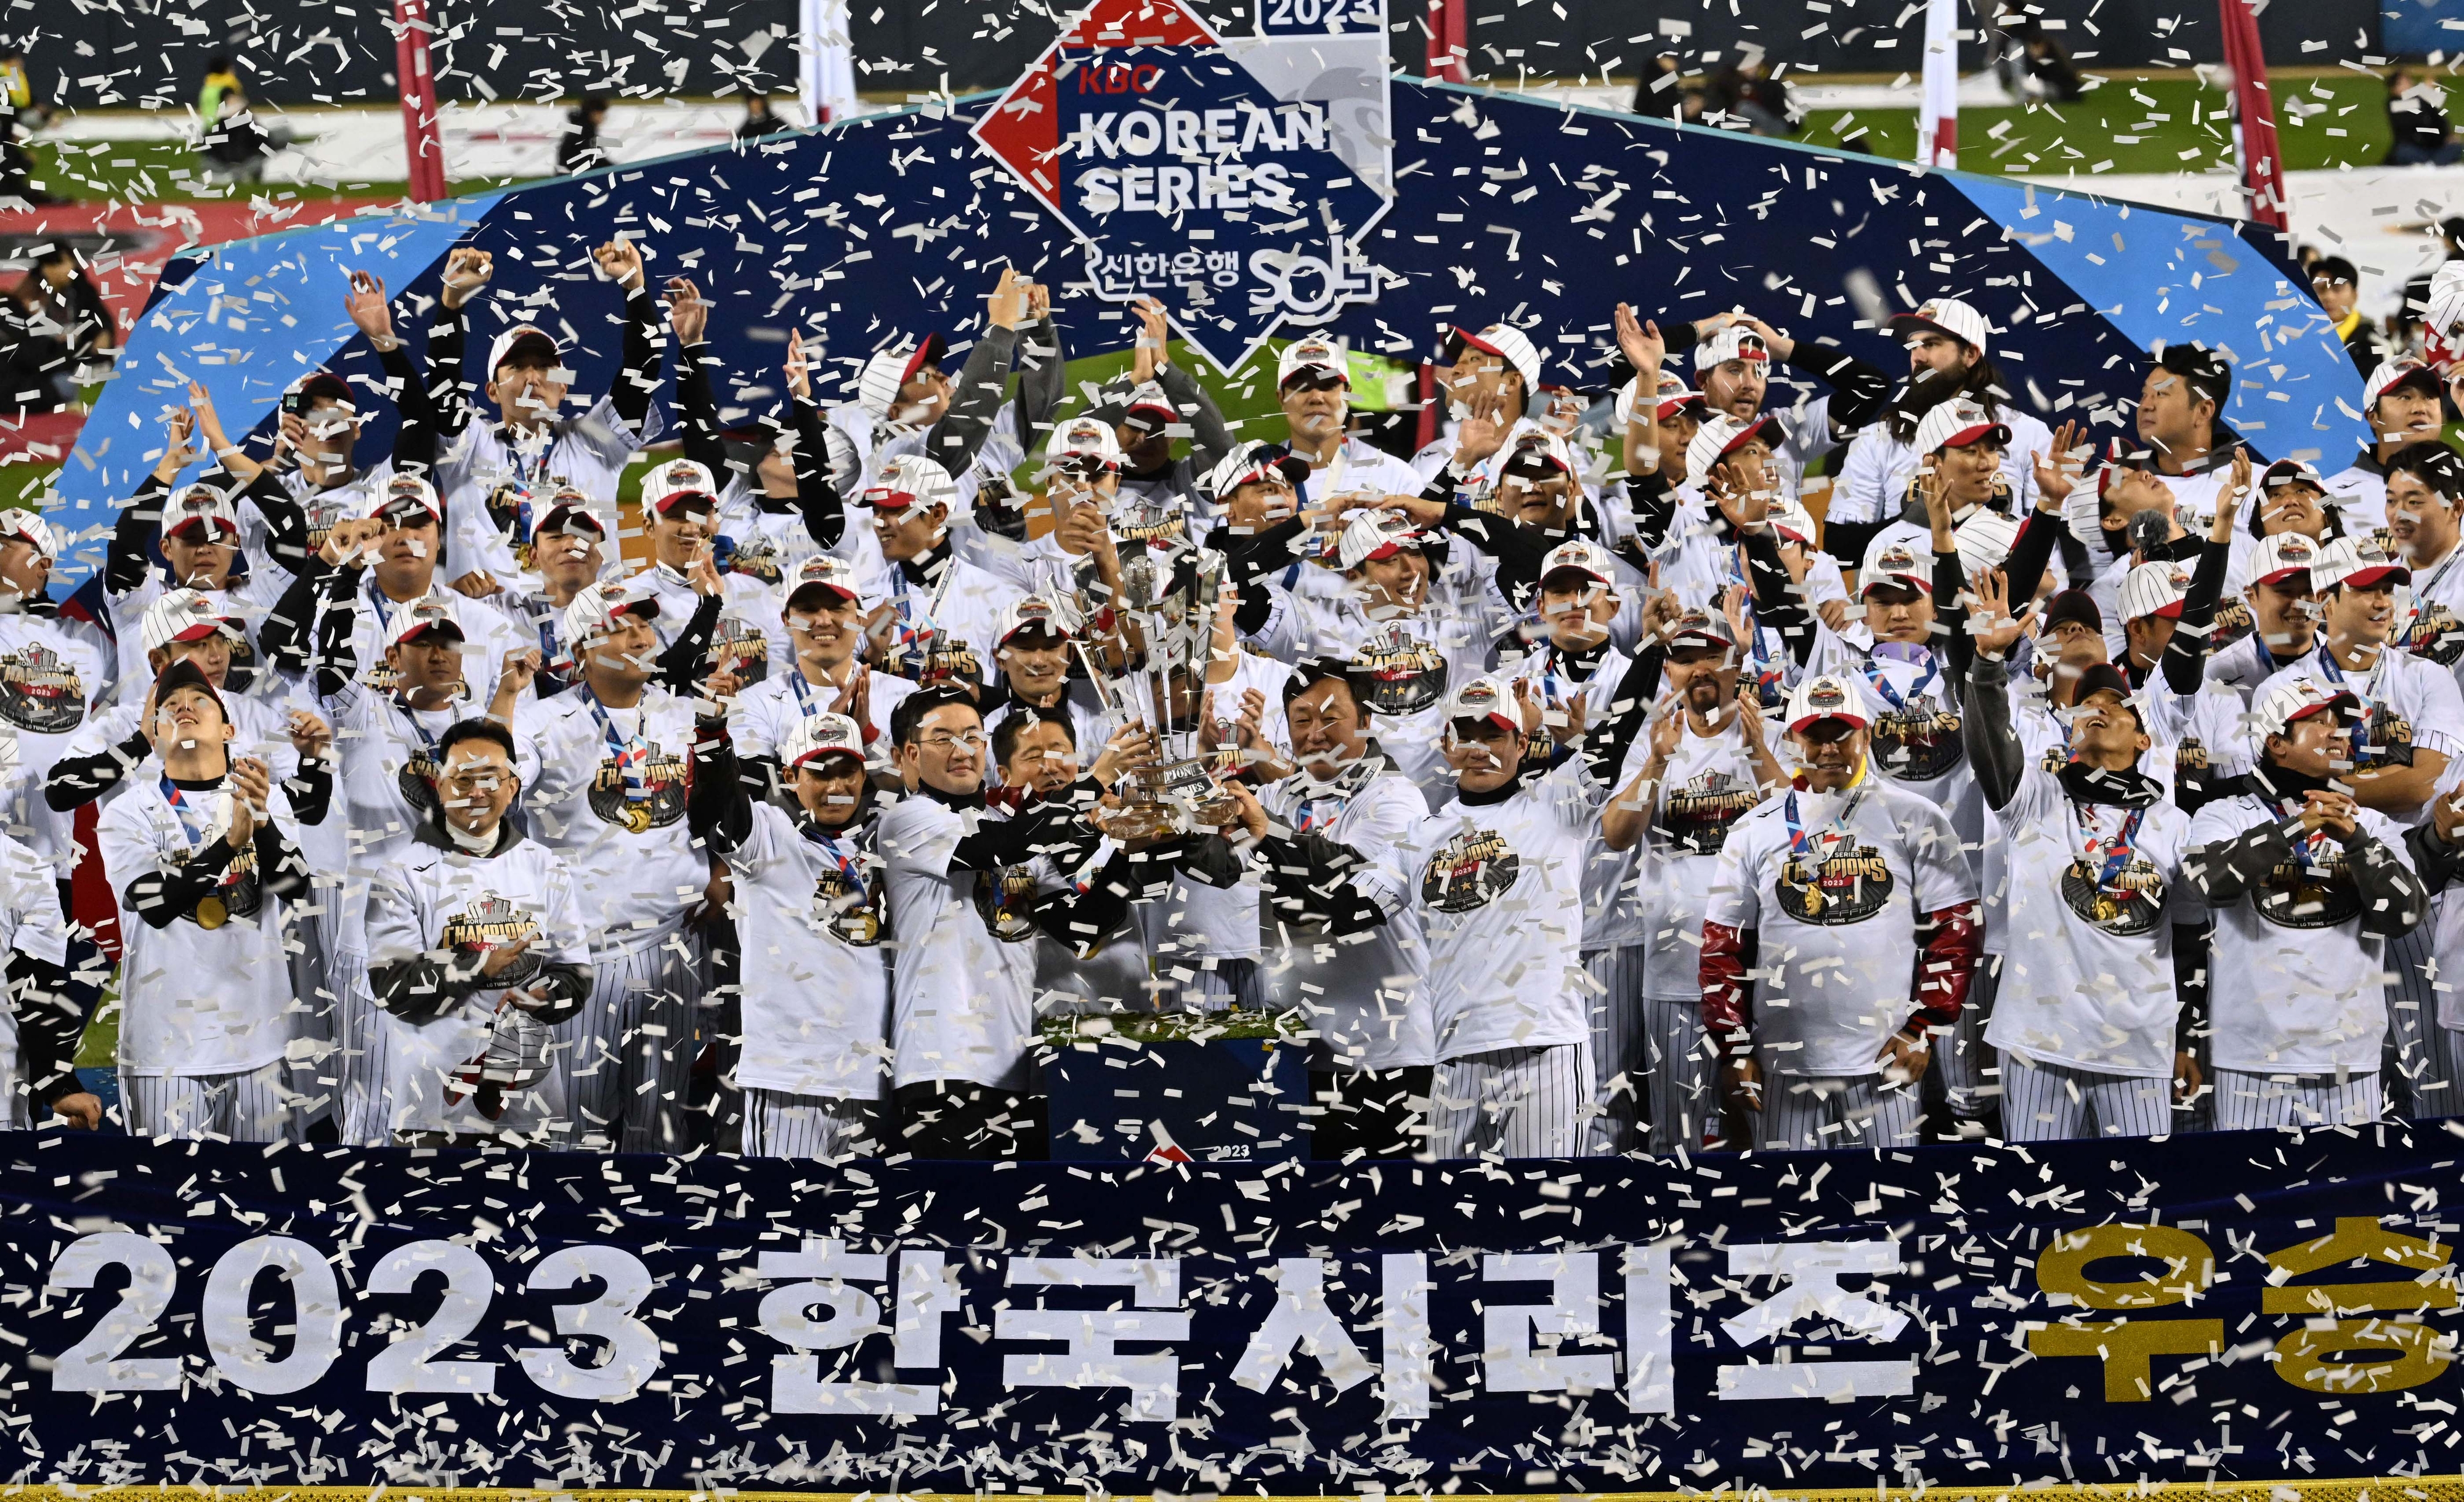 LG 트윈스 선수단이 13일 서울 잠실구장에서 열린 한국시리즈 우승 직후 트로피와 함께 우승의 기쁨을 만끽하고 있다. 도준석 기자